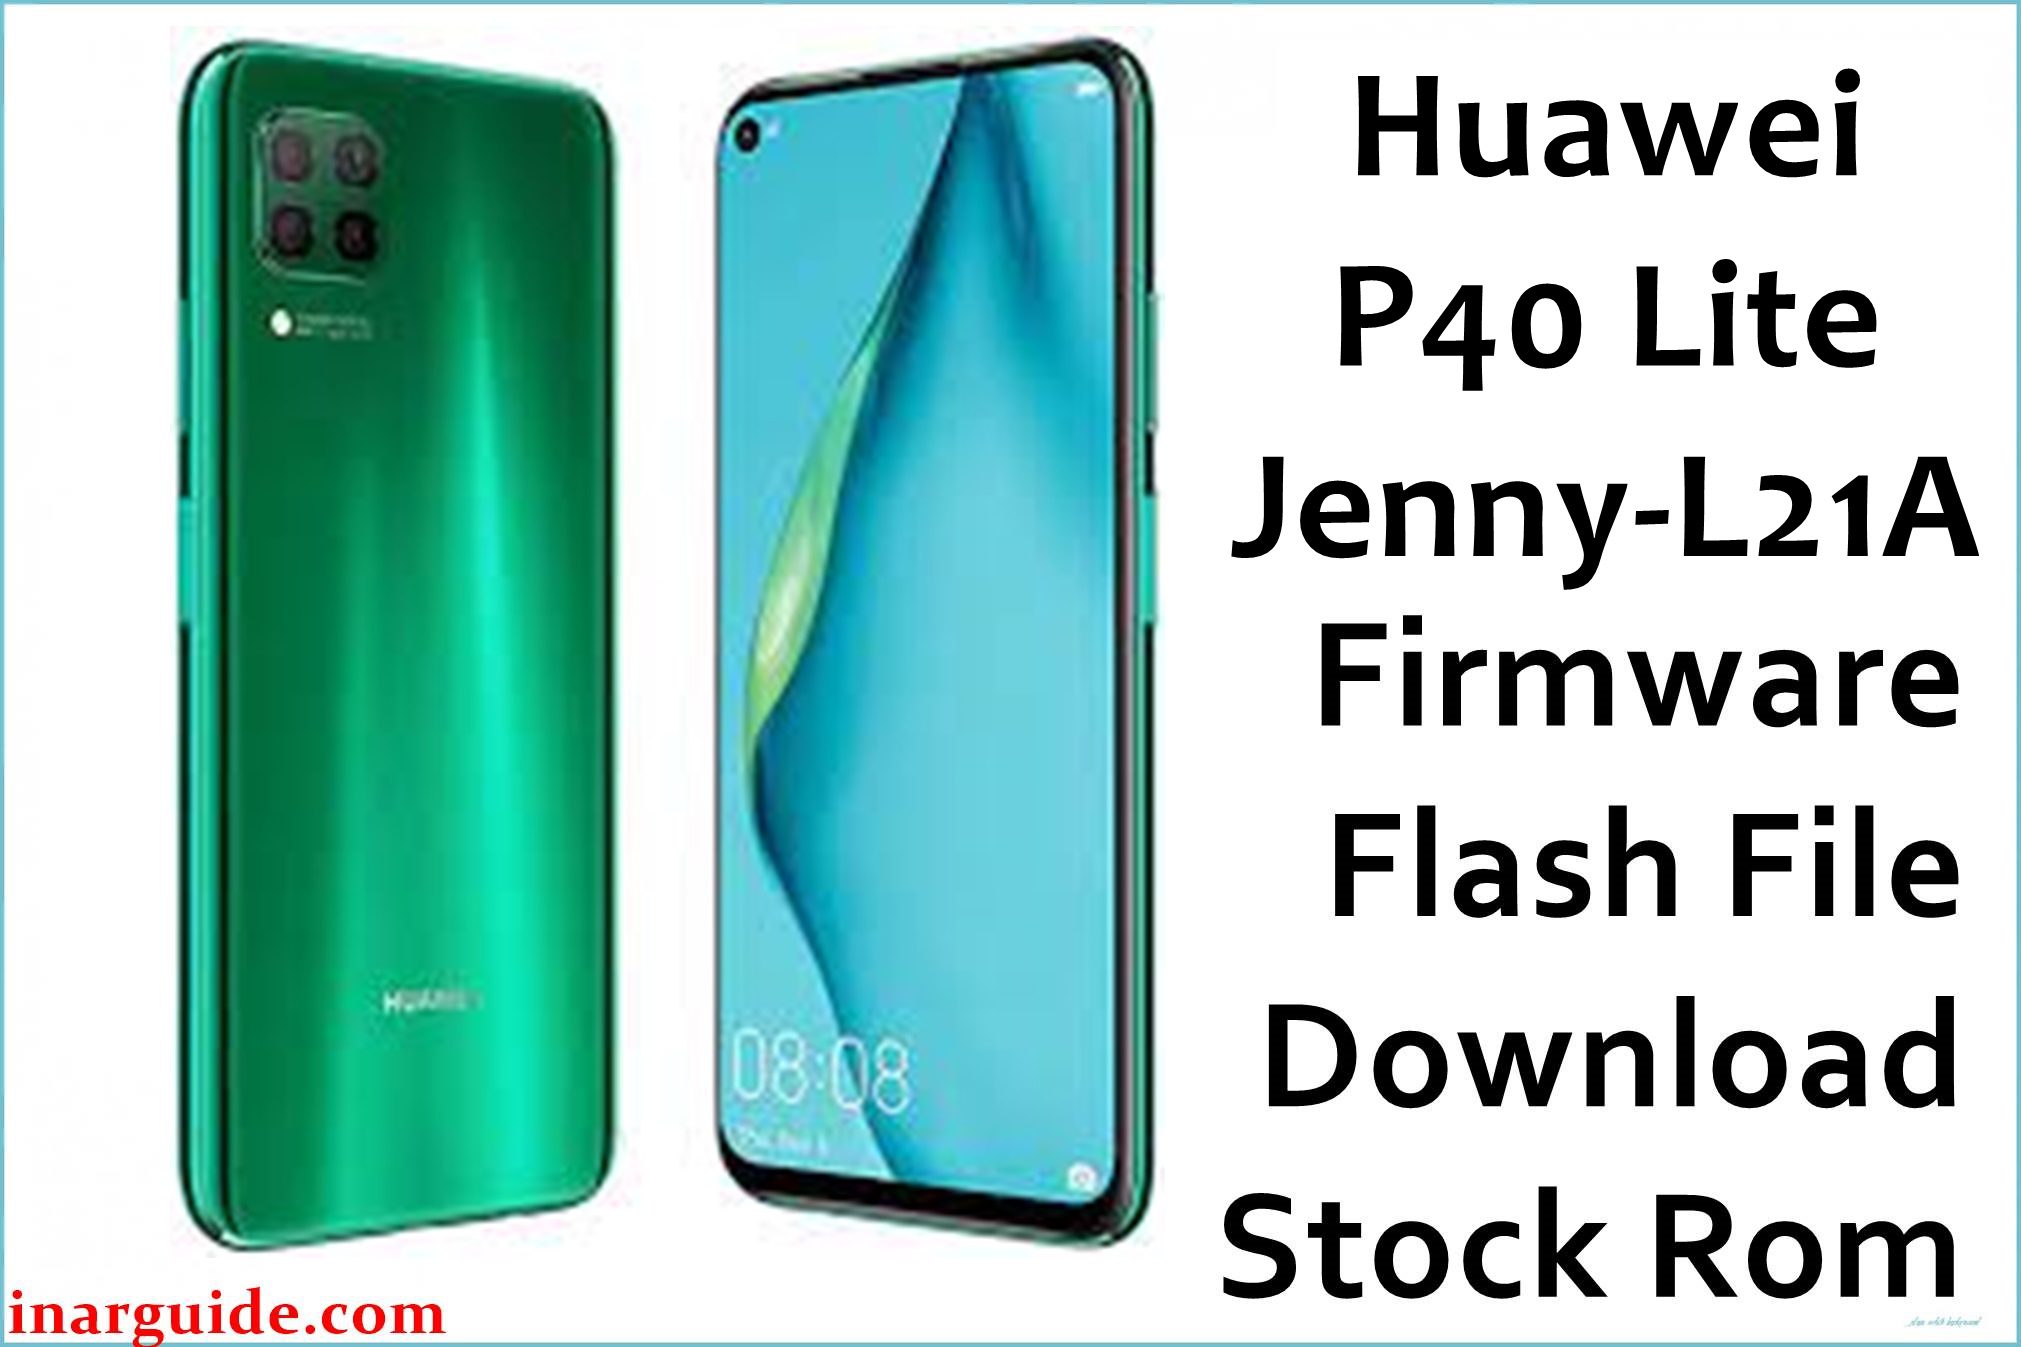 Huawei P40 Lite Jenny L21A